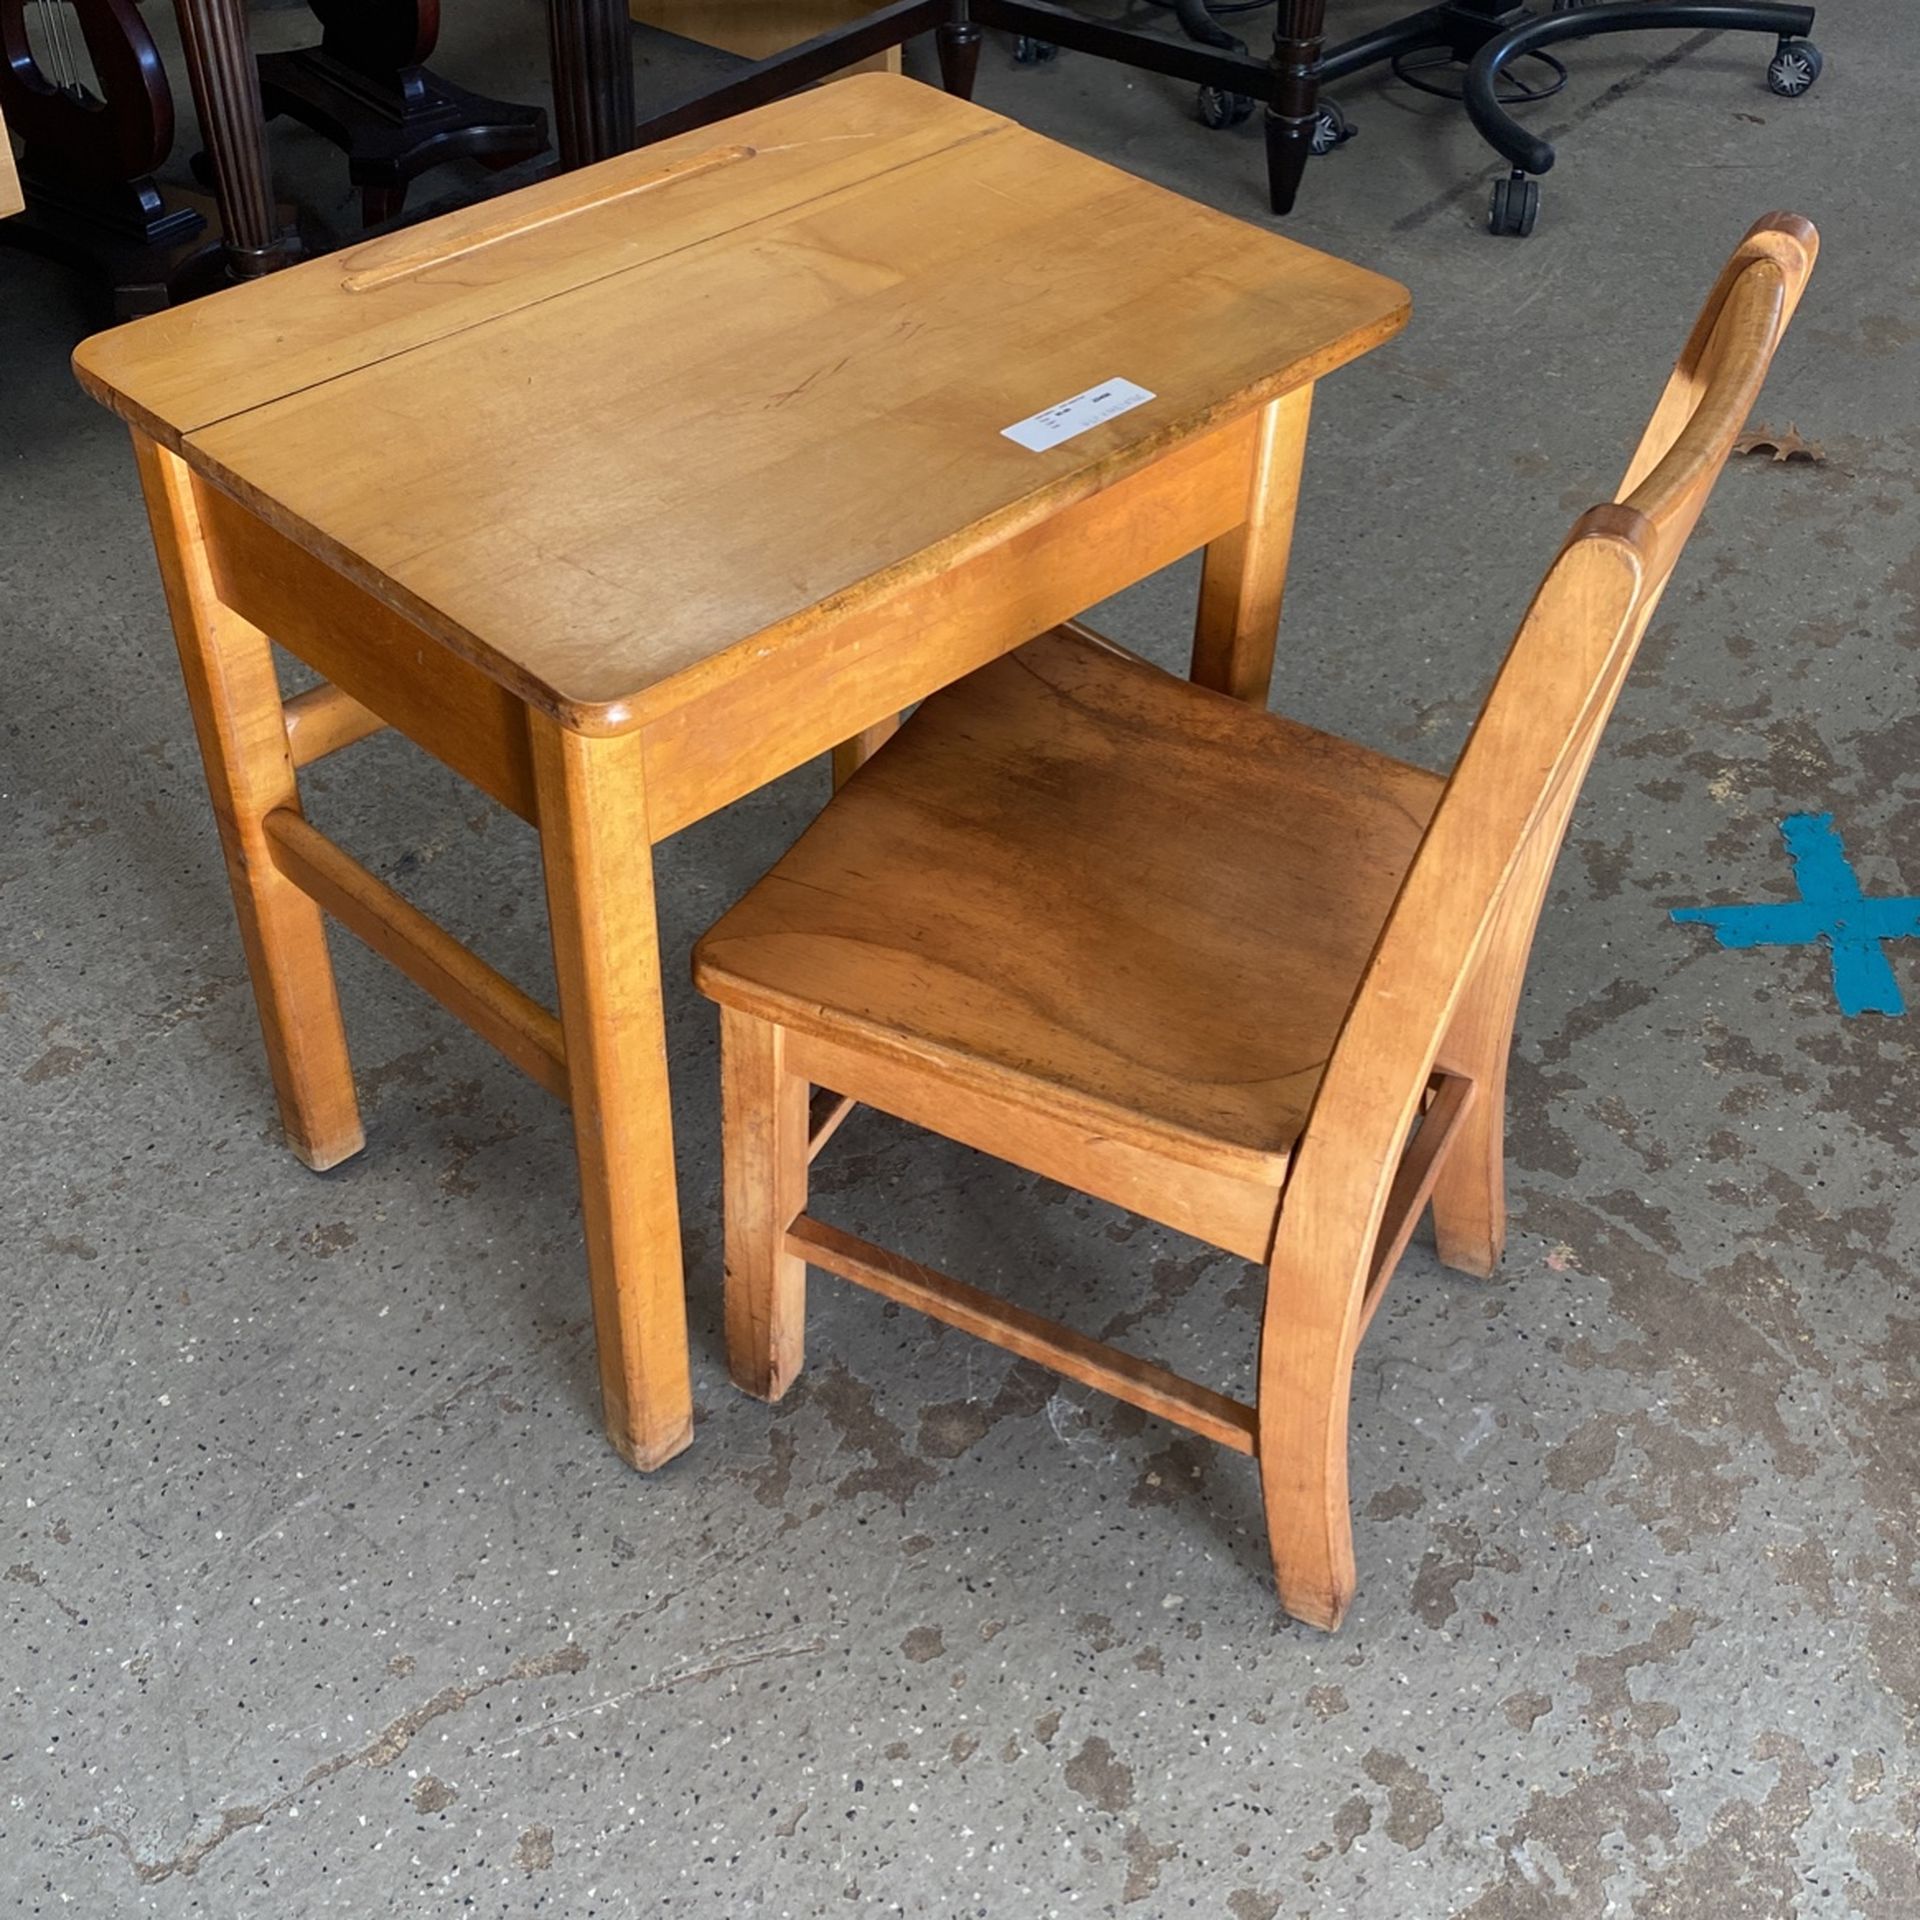 Child’s Desk W/ Chair $50